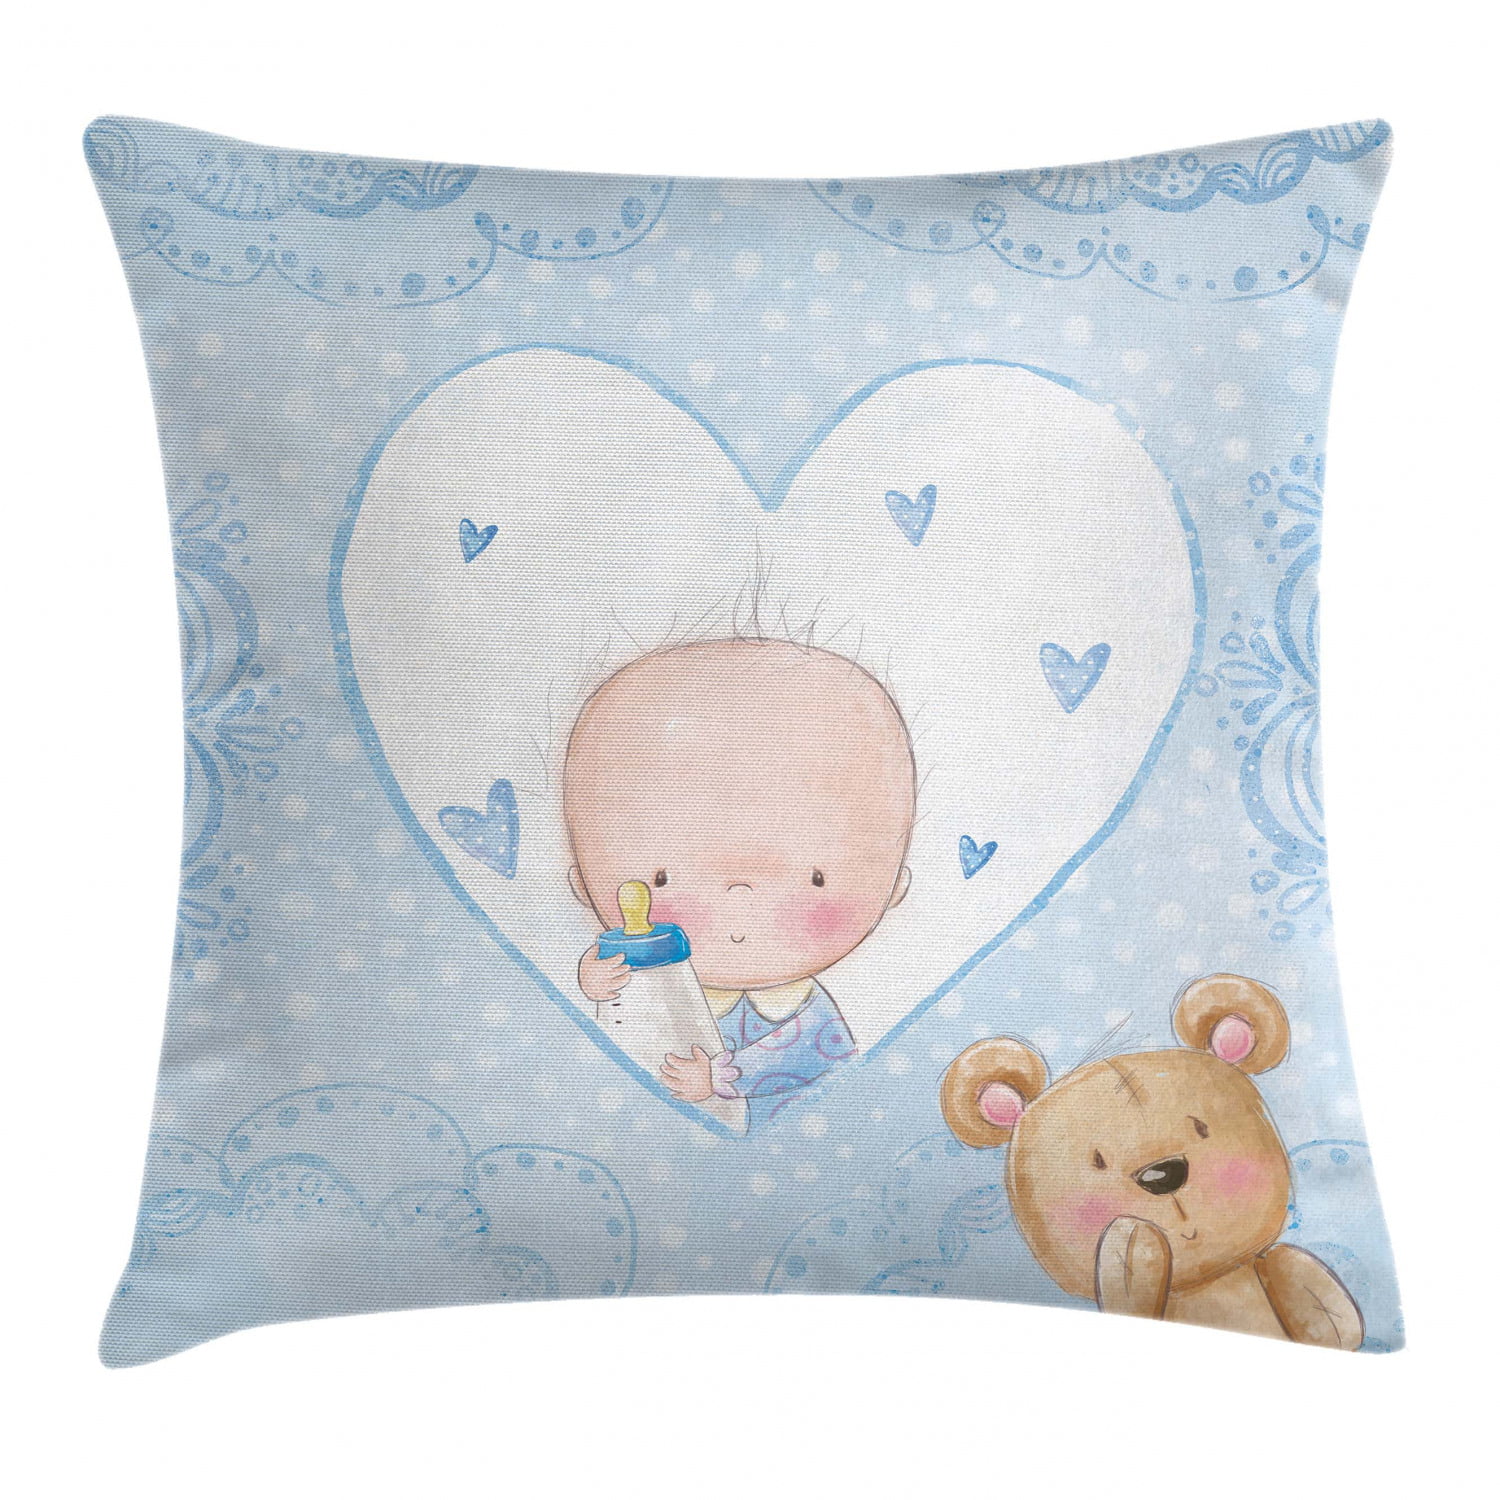 ITH-Teddy-Heart pillow 20x20